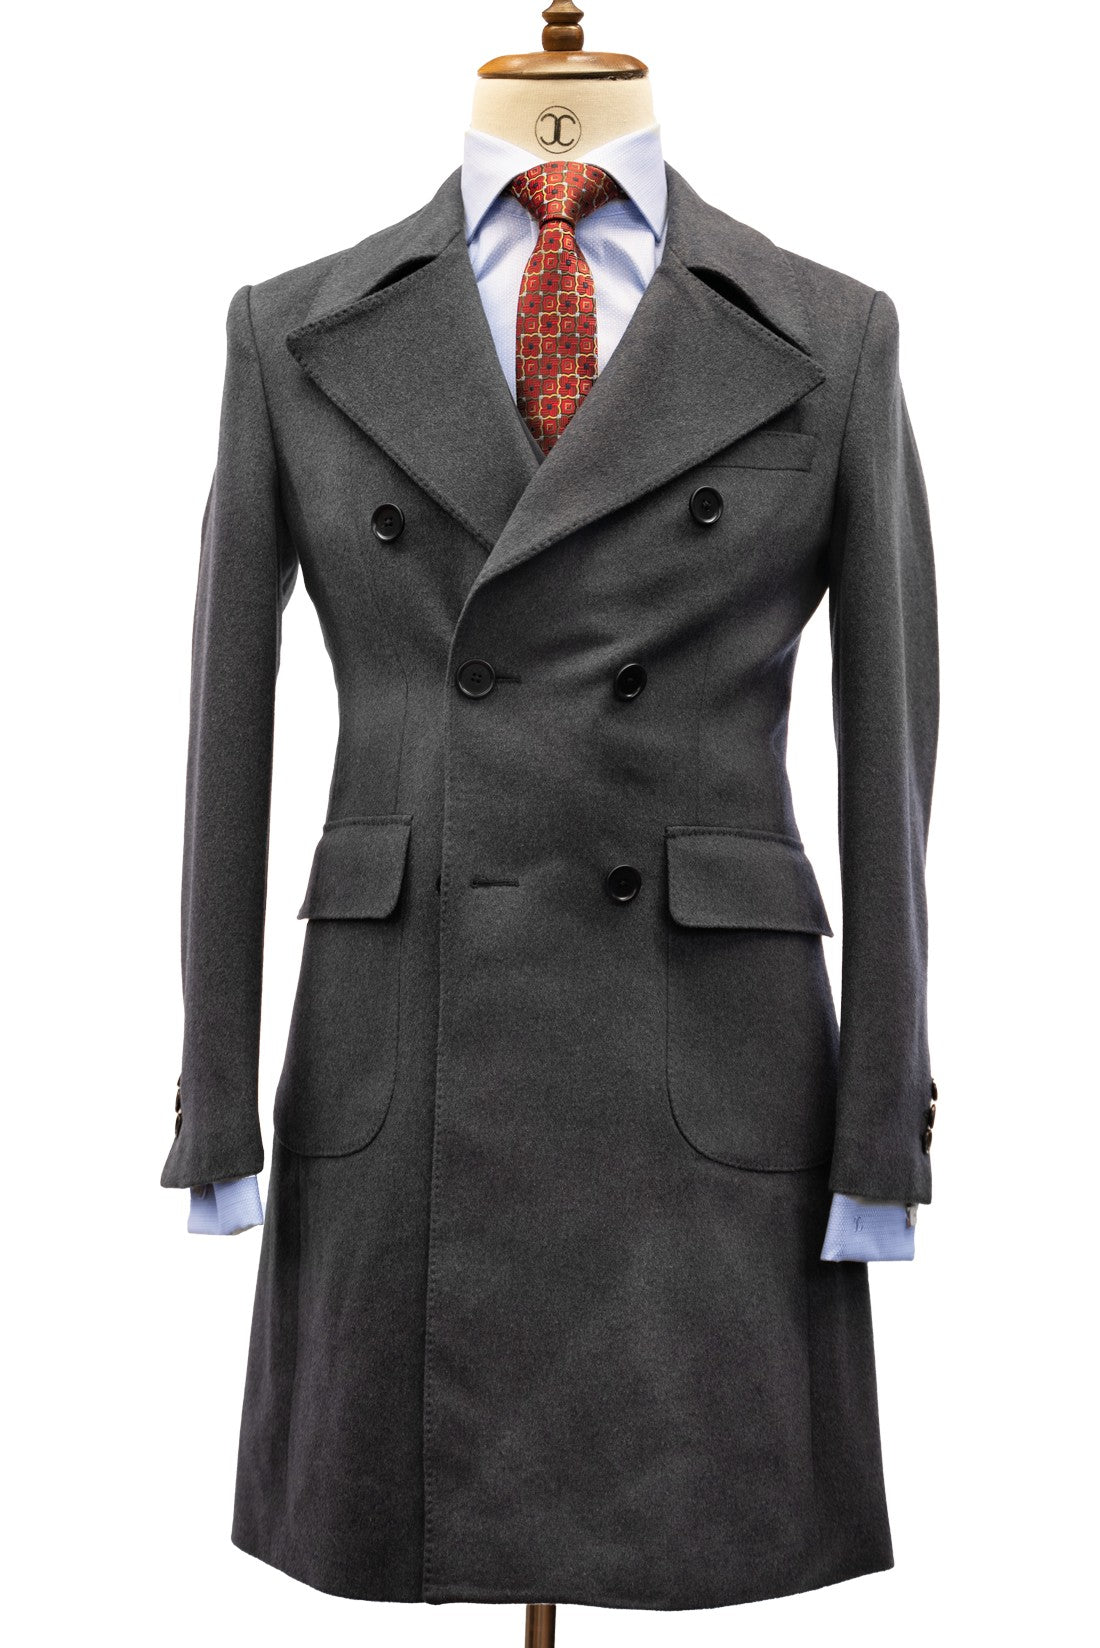 CONNAISSEUR PARIS - Gentleman's Grey Cashmere Wool Slim Fit Overcoat